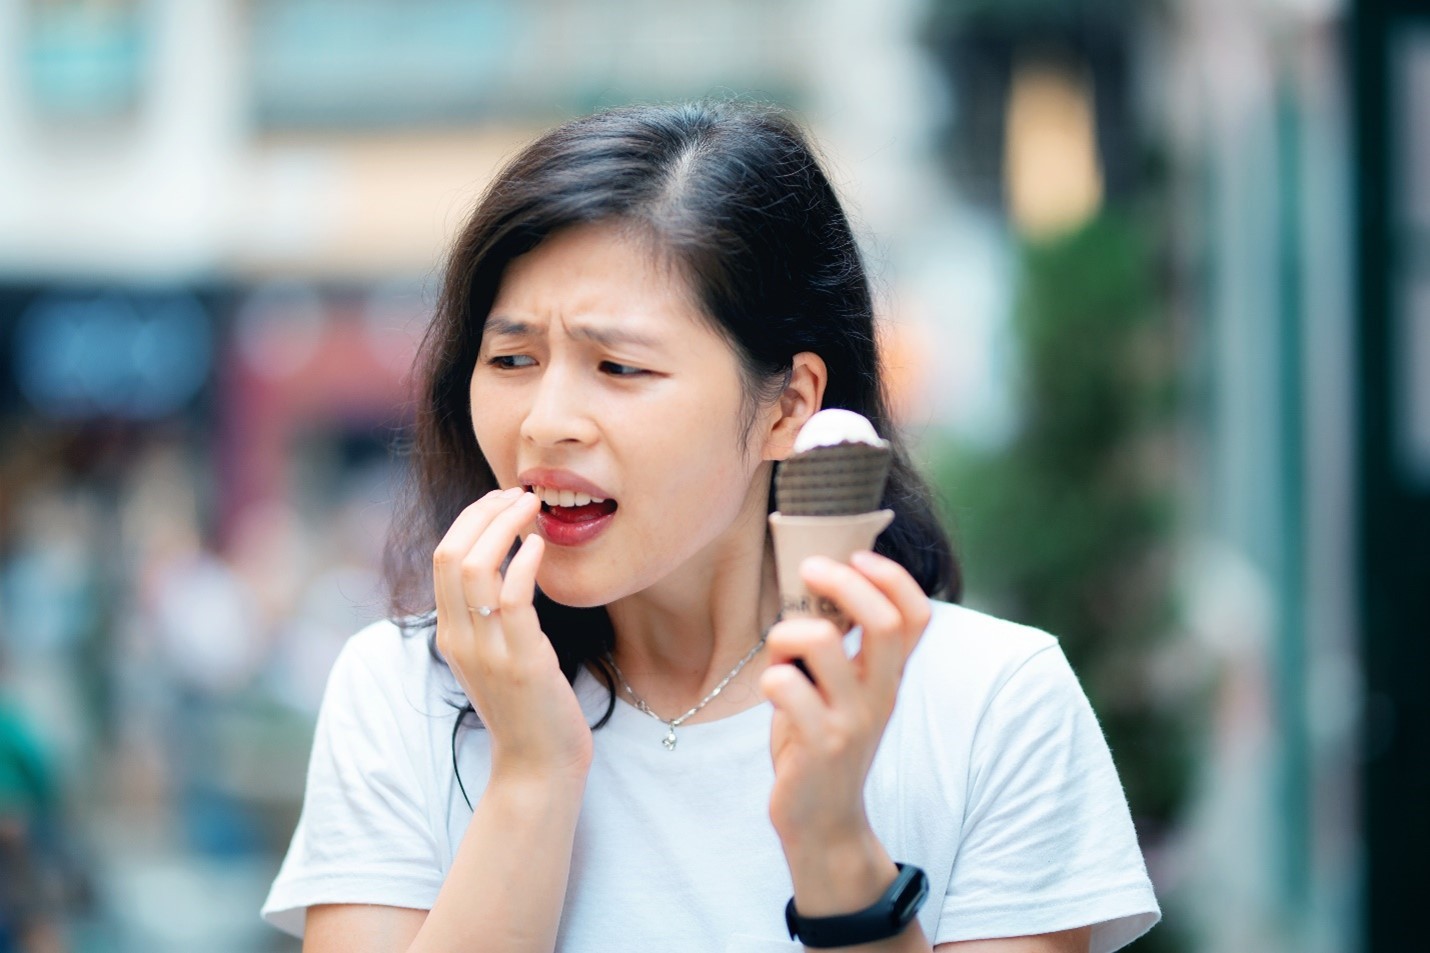 Răng nhạy cảm khi dùng kem lạnh thường không phải là triệu chứng mọc răng khôn